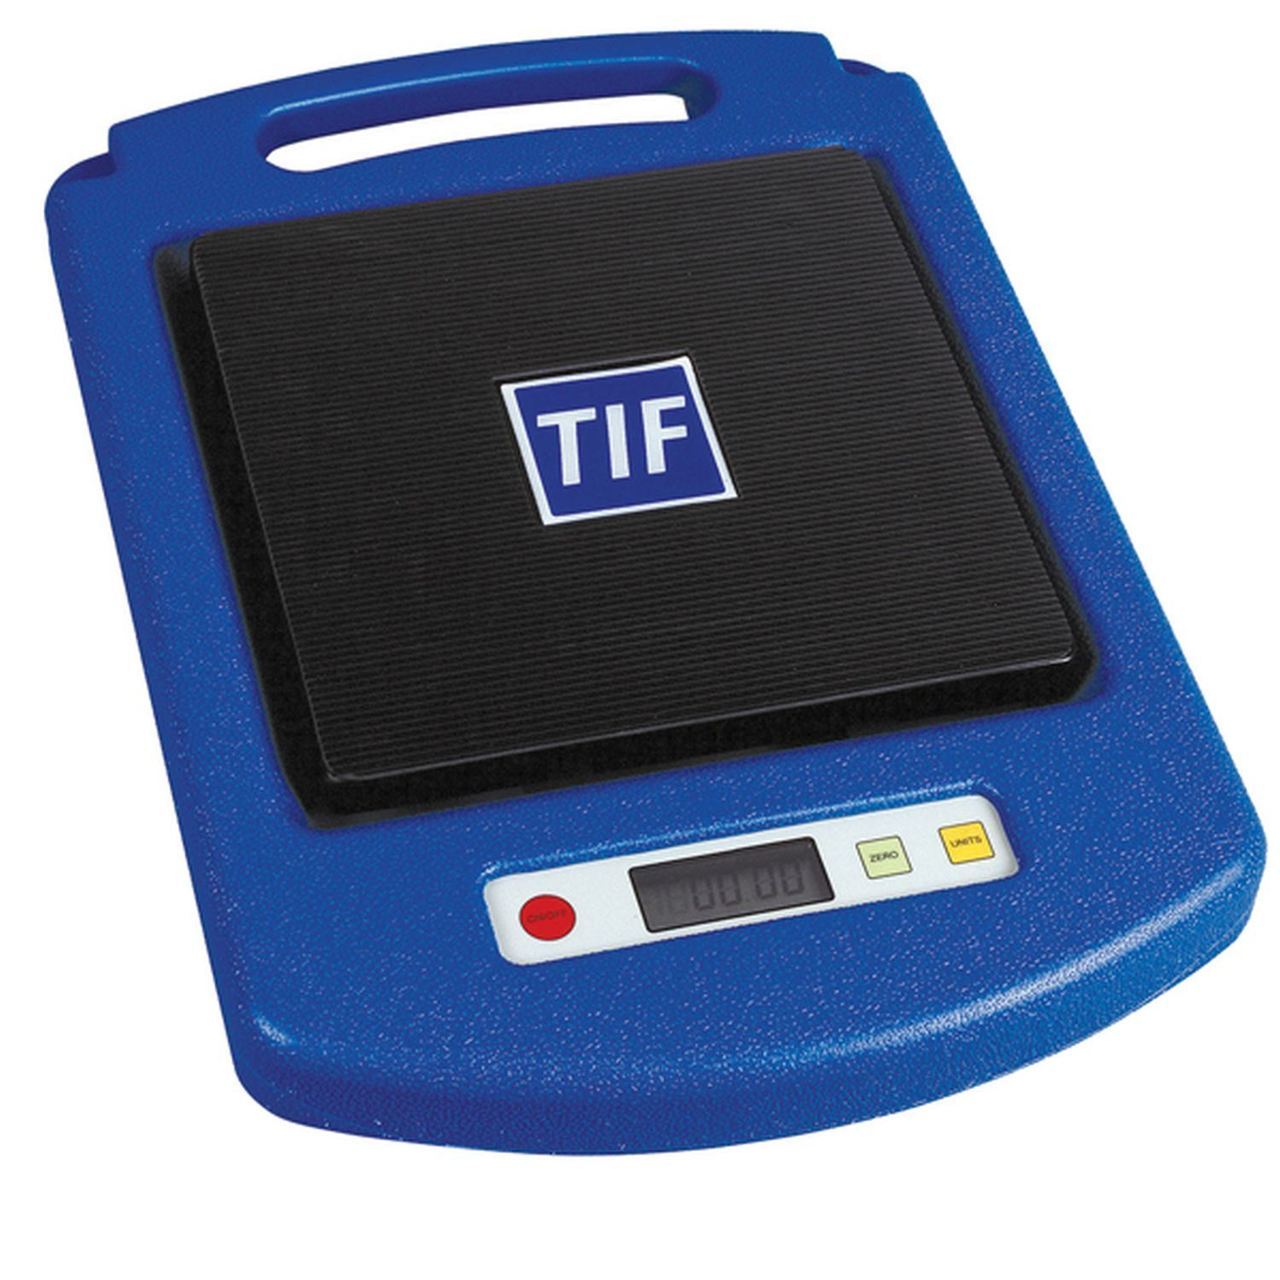 TIF - Инструменты и приборы для обслуживания холодильных установок и систем кондиционирования воздуха